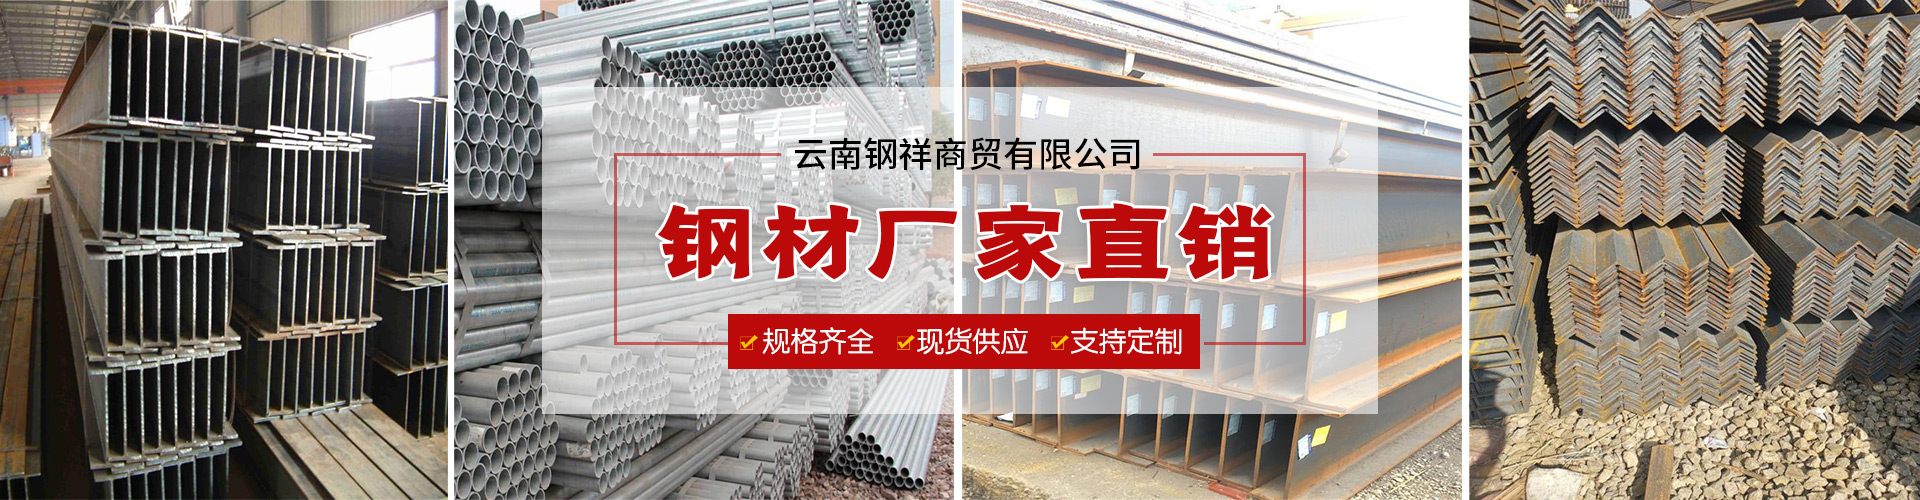 云南昆明轨道钢价格-轨道钢厂家直销-轨道钢质量保证